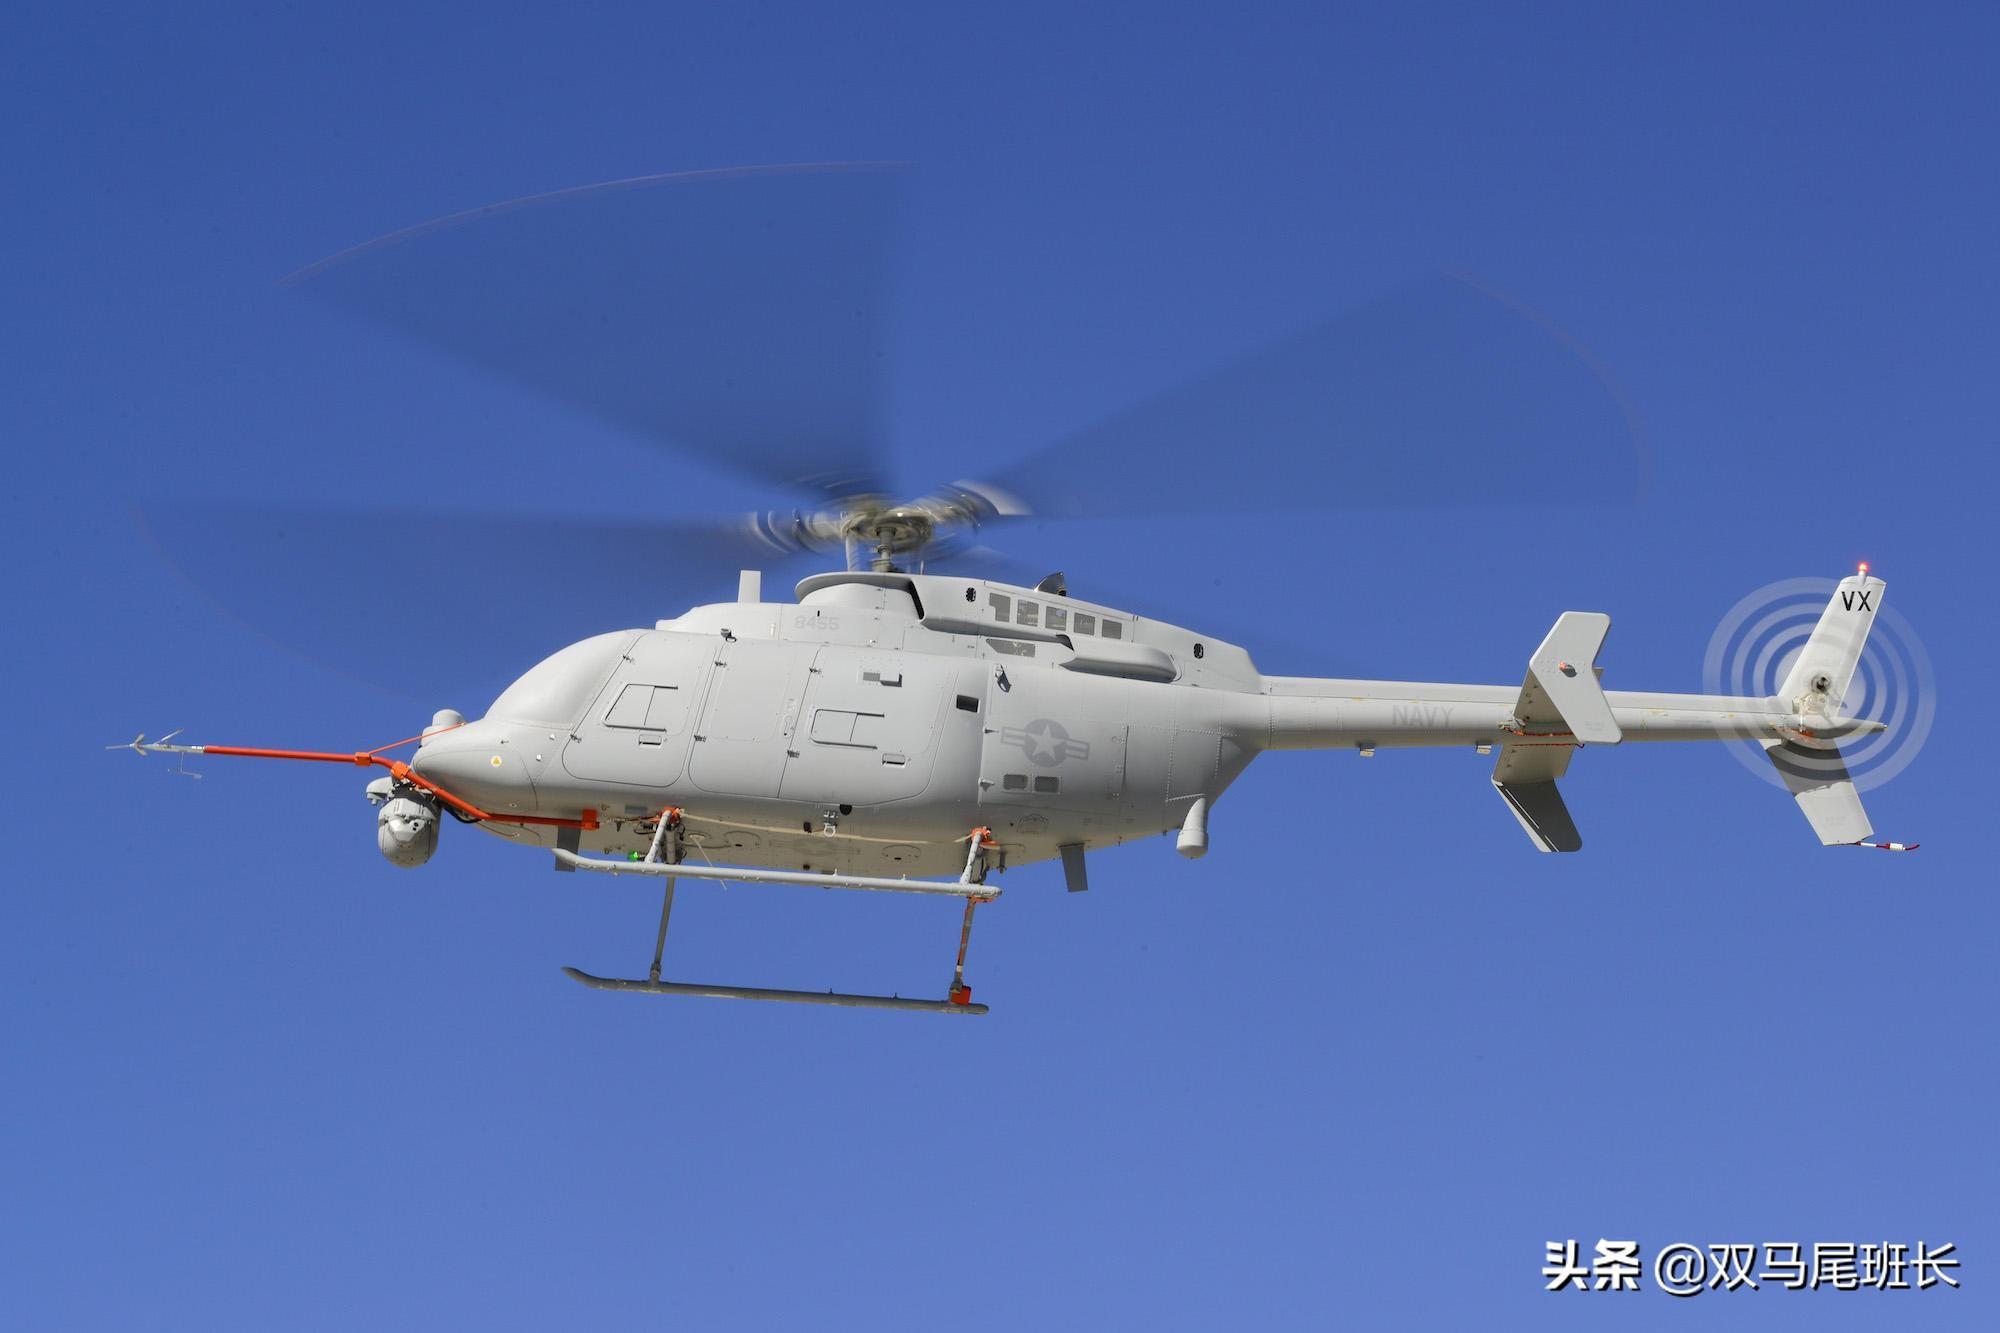 人直升机,该机被称为中国版的火力侦察兵,是一款舰载专用的大型无人